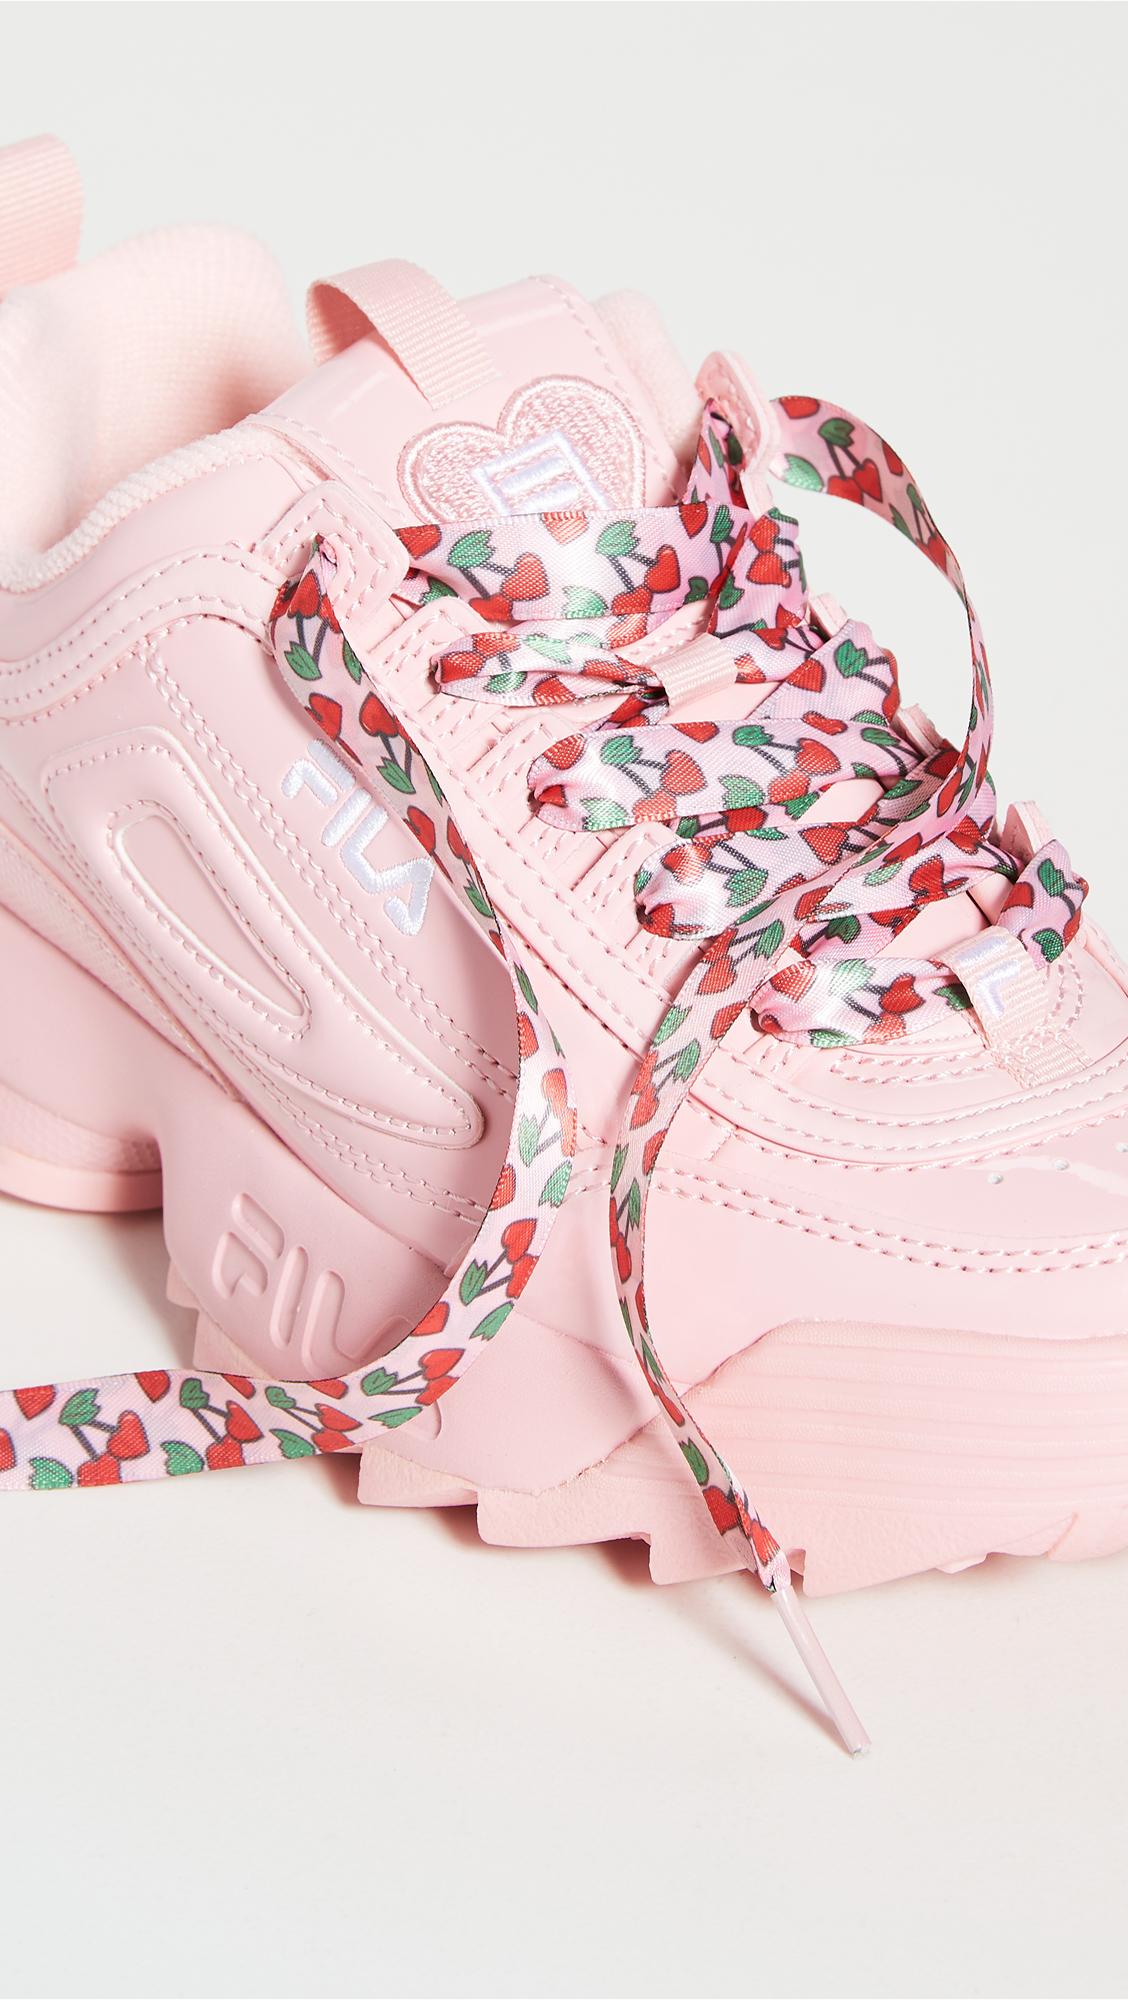 Fila Disruptor Ii Heart Sneakers in Pink | Lyst